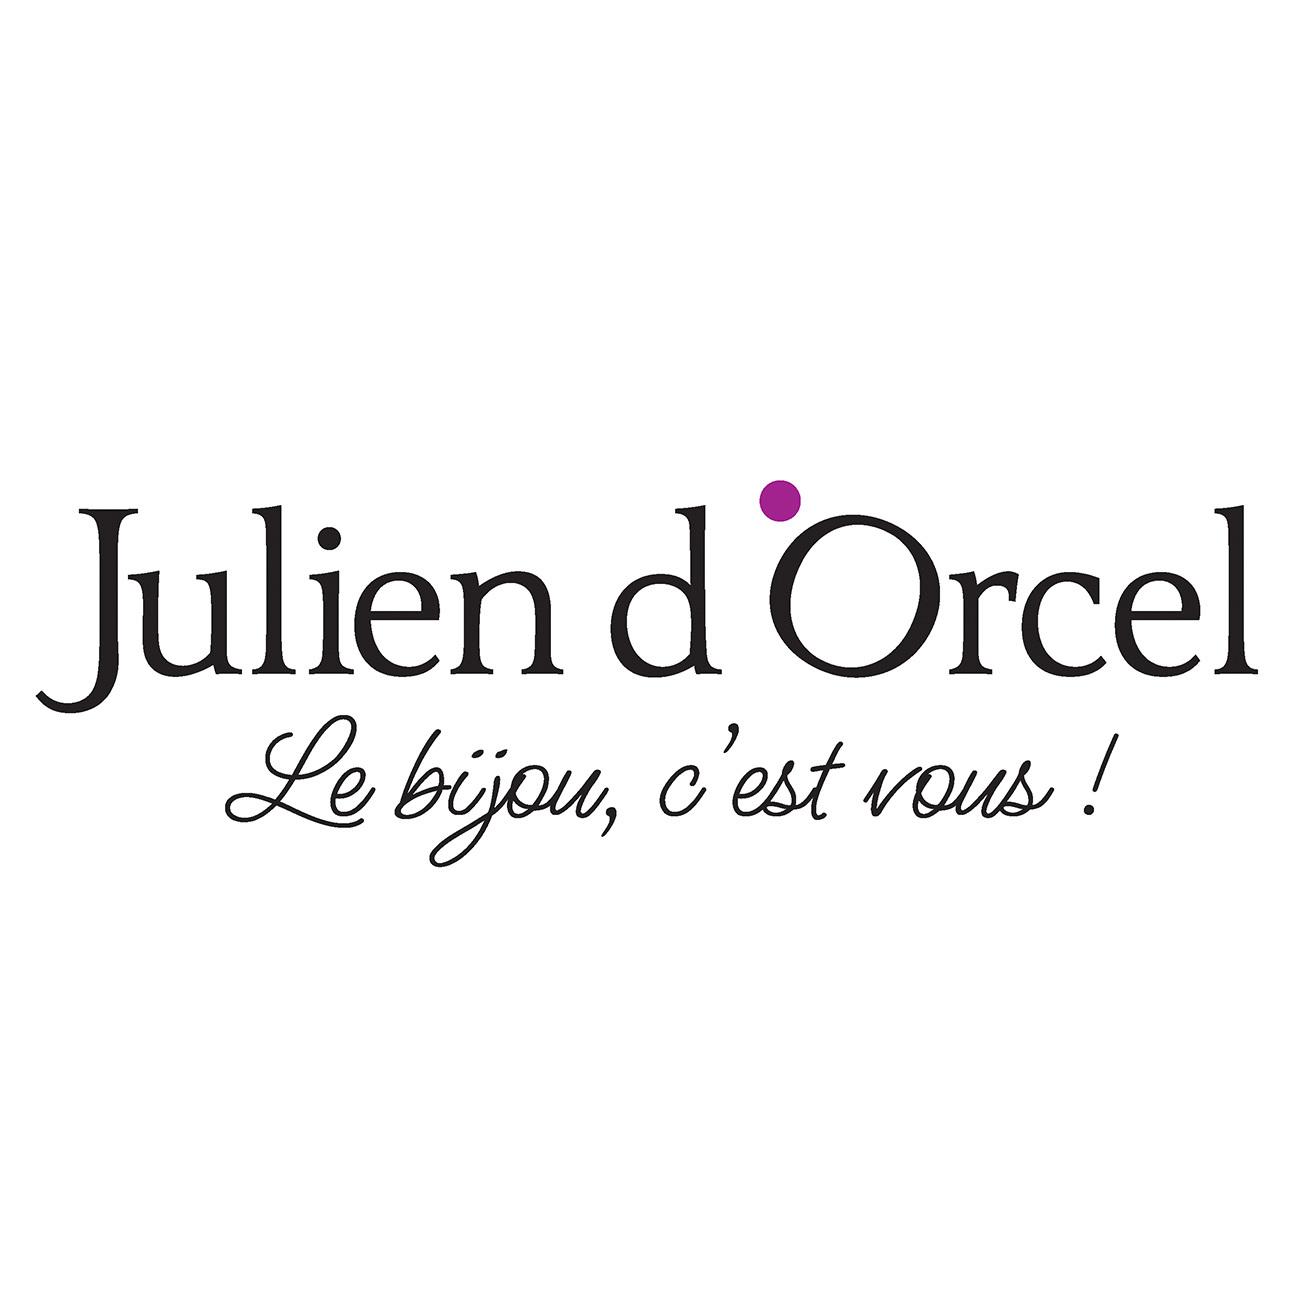 Julien D'orcel Pierry